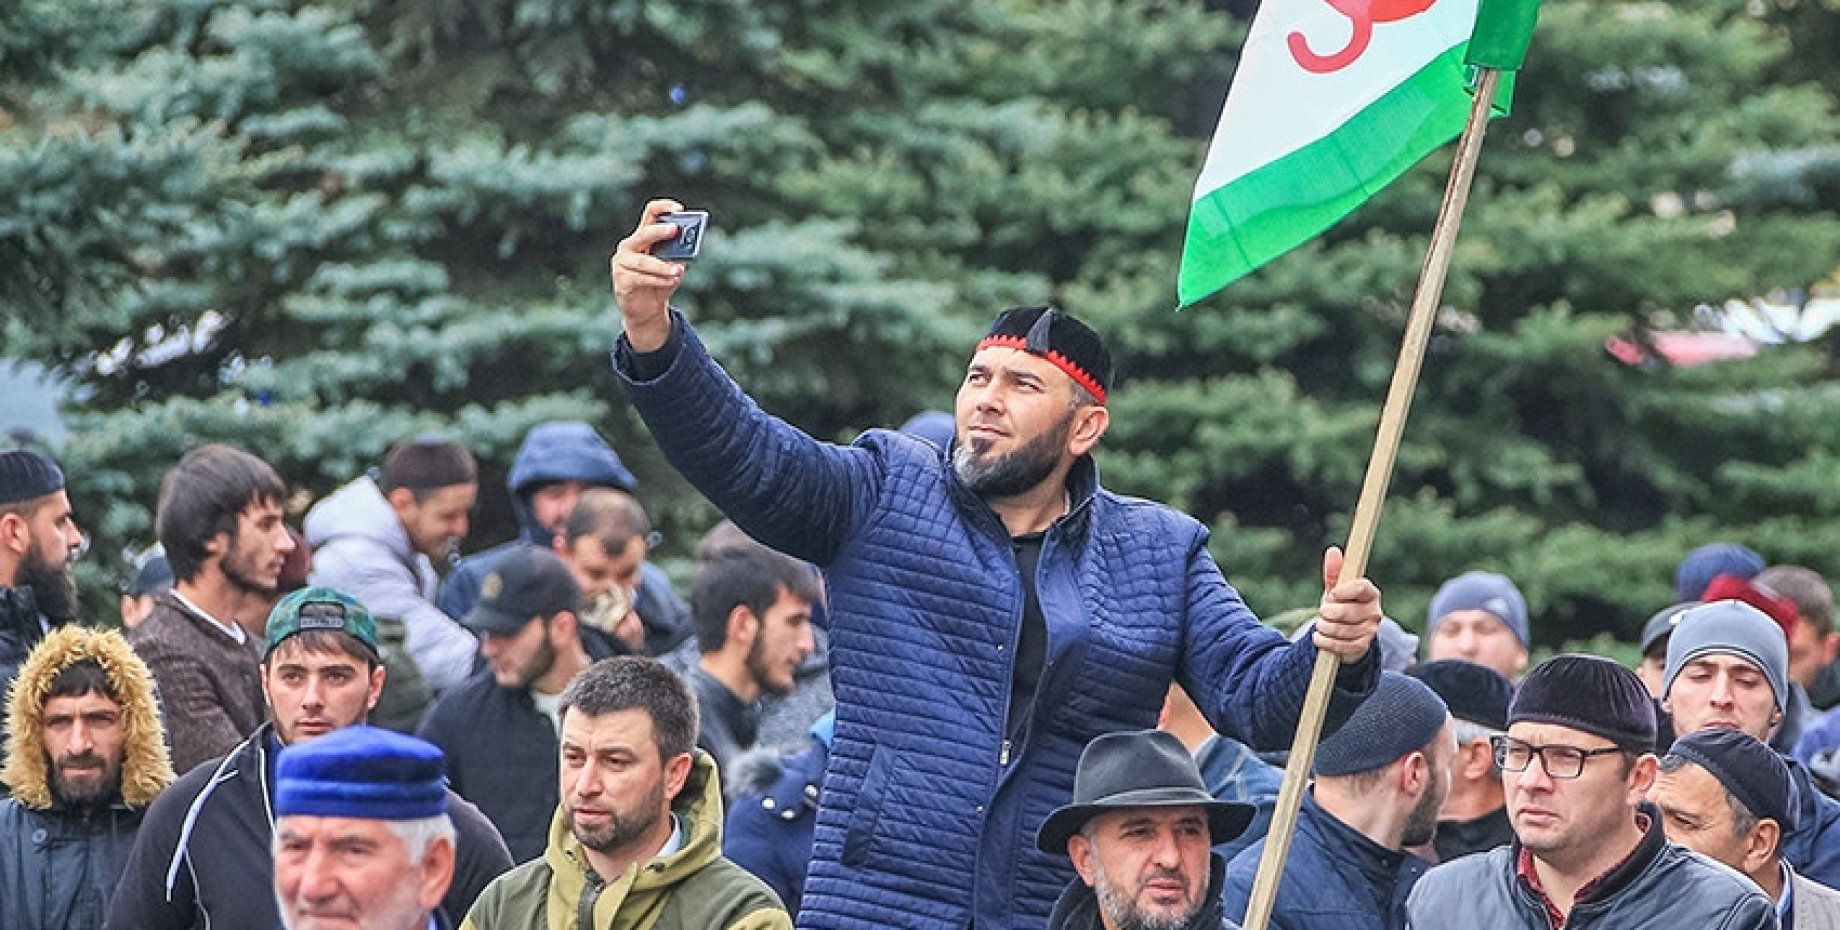 Обстановка народа. Митинг в Ингушетии 2018. Чечня Ингушетия. Митинг в Магасе 2018. Ингуши митинг.